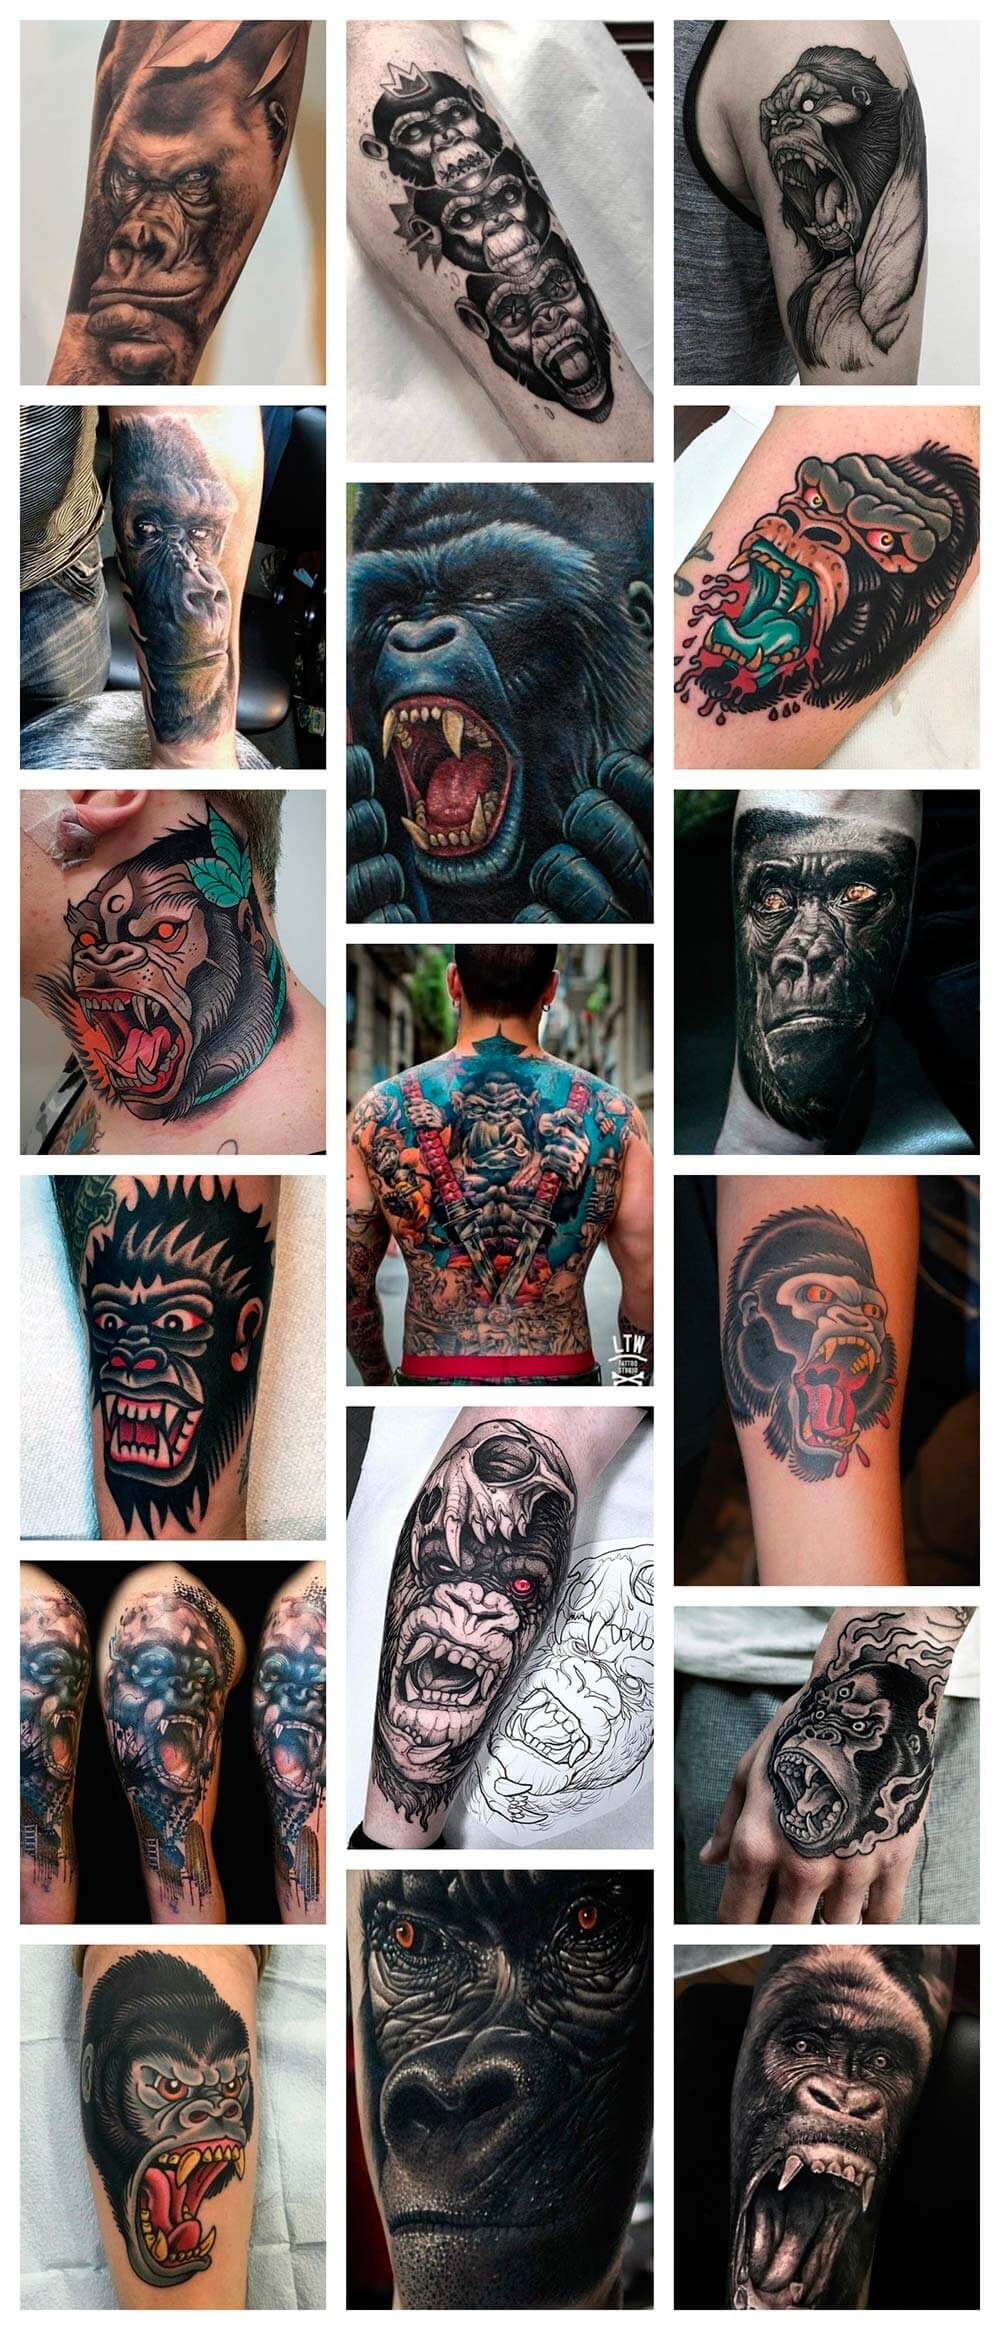 Galería de tatuajes reales de gorilas en brazos, piernas, cuello, espalda, pecho ...